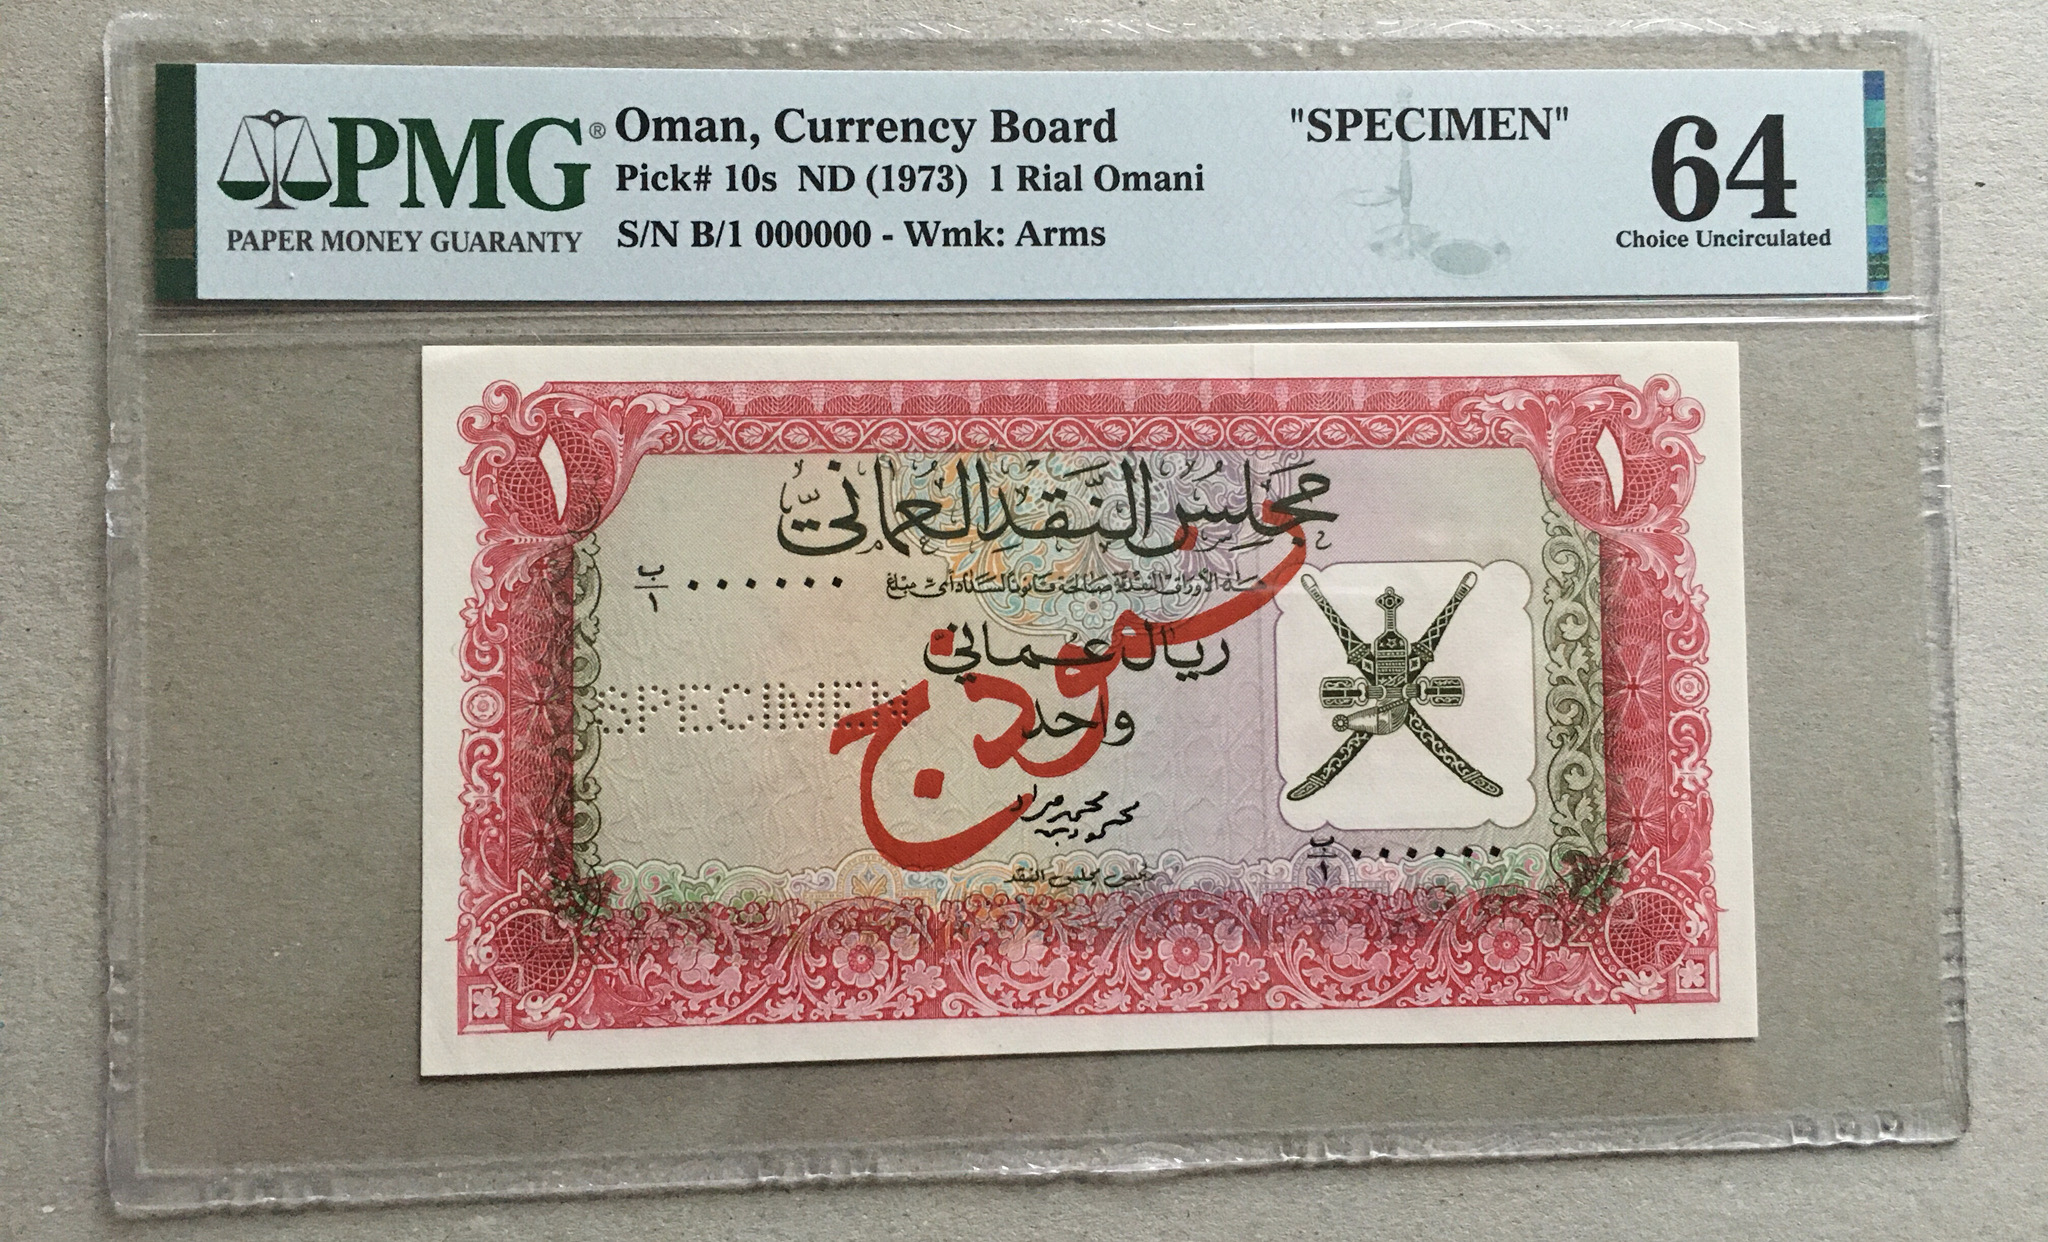 1973 Oman 1 Rial Omani Specimen Banknote Pick 10s PMG 64 UNC